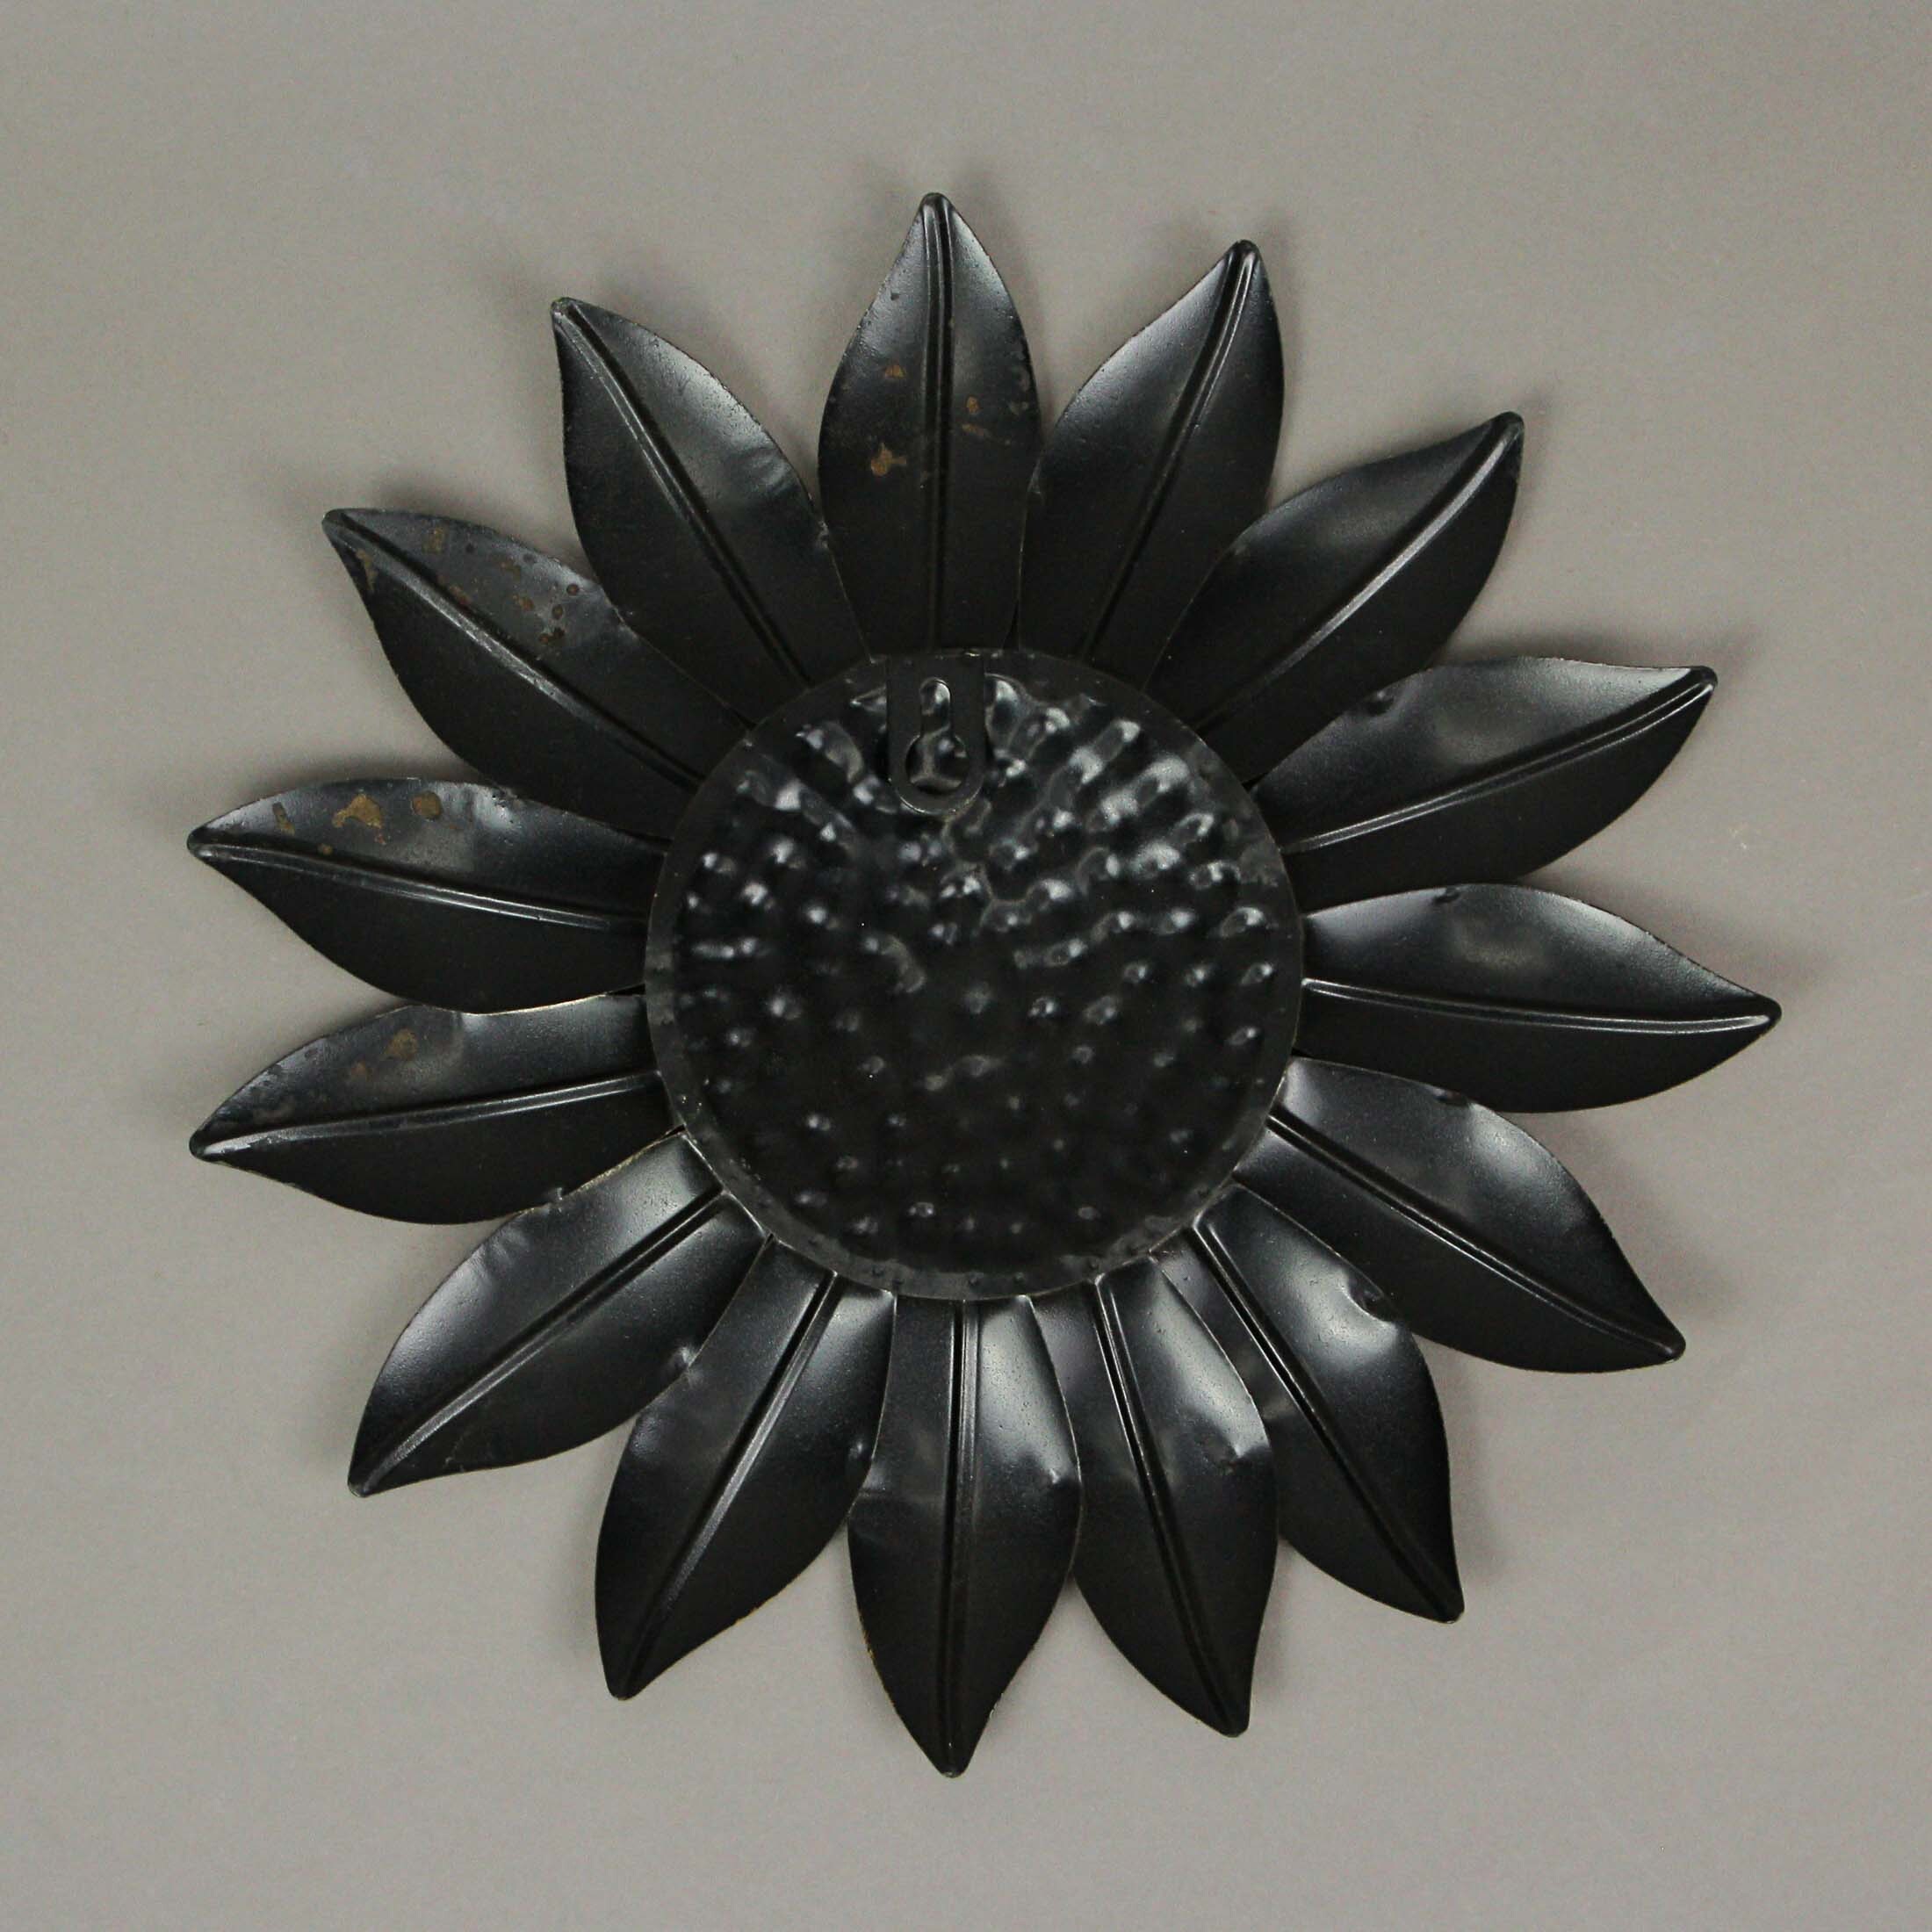 Hand Painted Metal Sunflower Wall Sculpture Medium 10.25 Inch Diameter